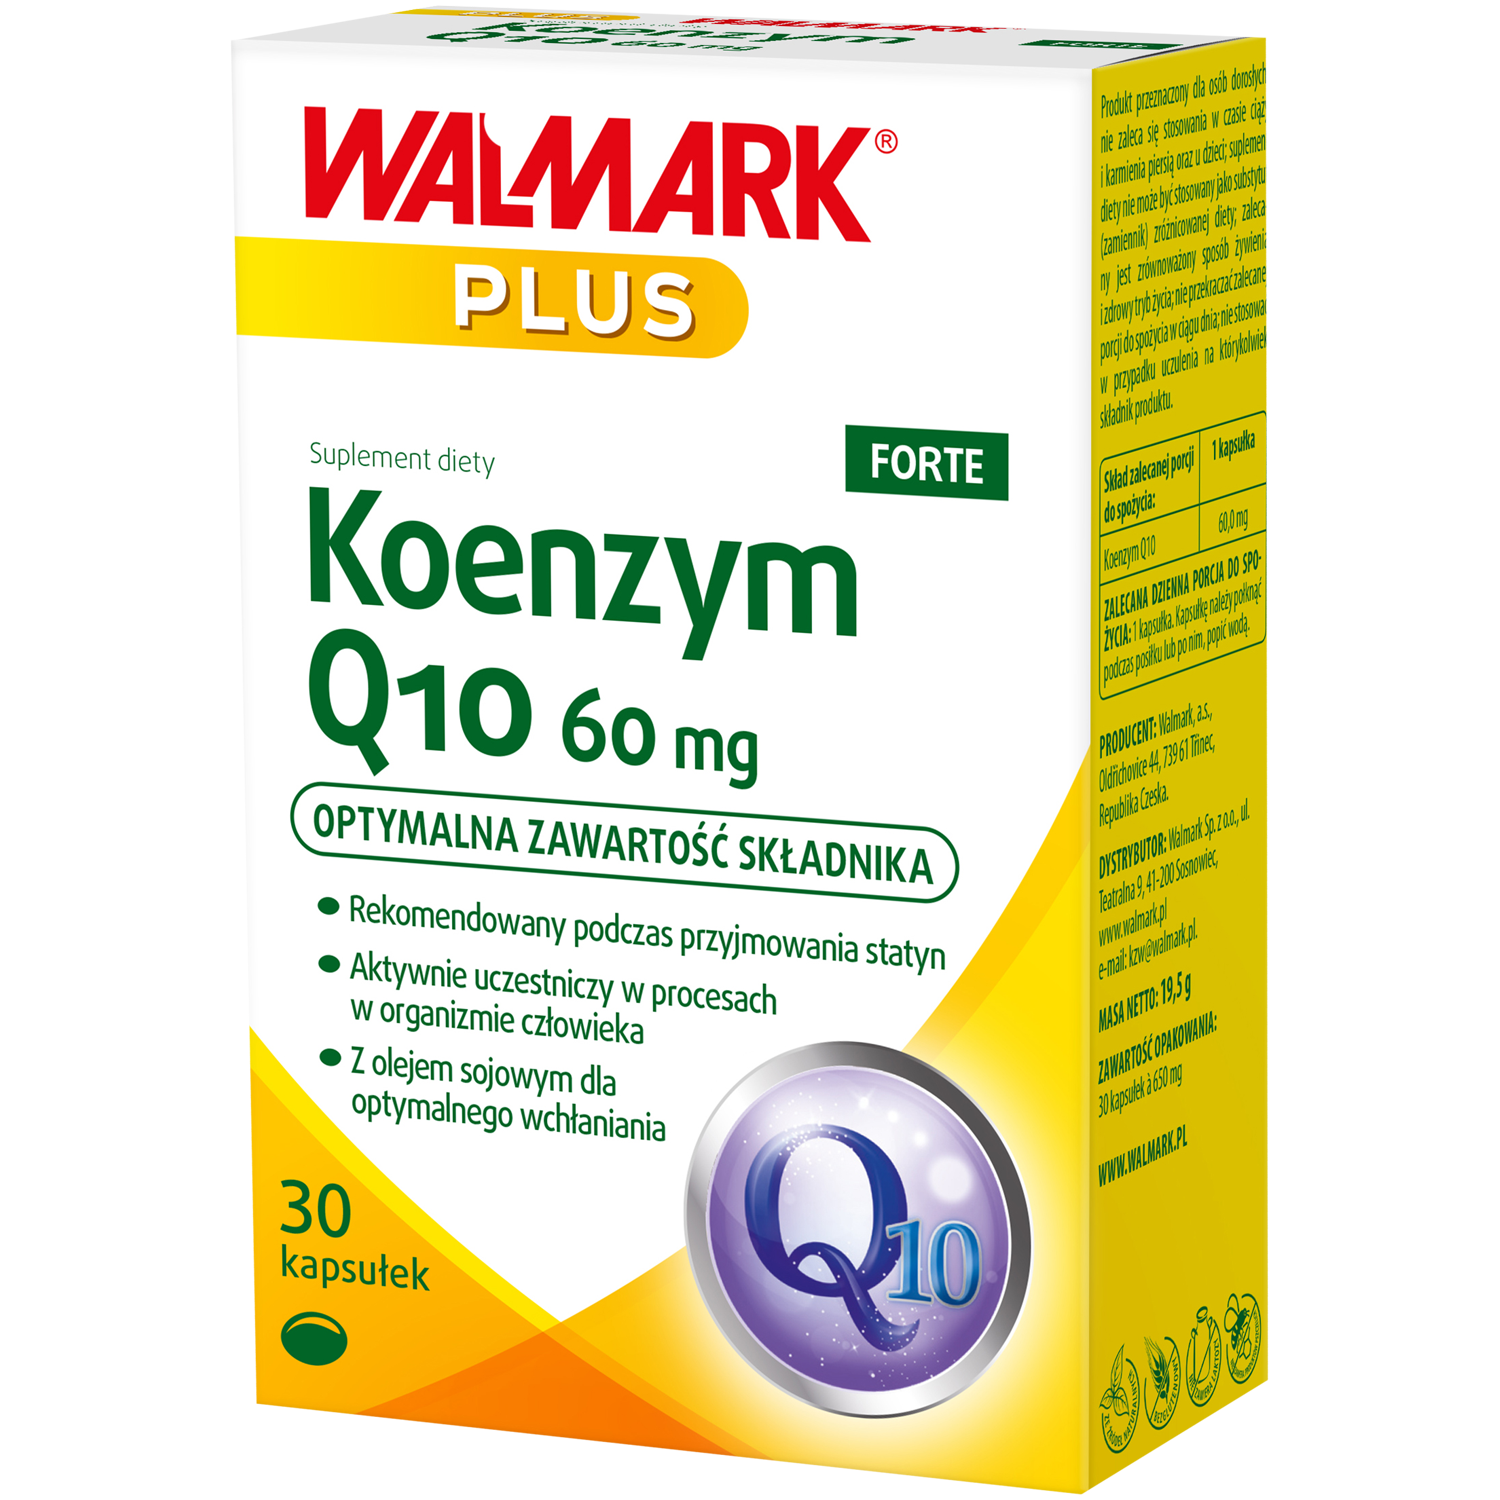 Walmark Plus Koenzym Q10 биологически активная добавка, 30 капсул/1 упаковка